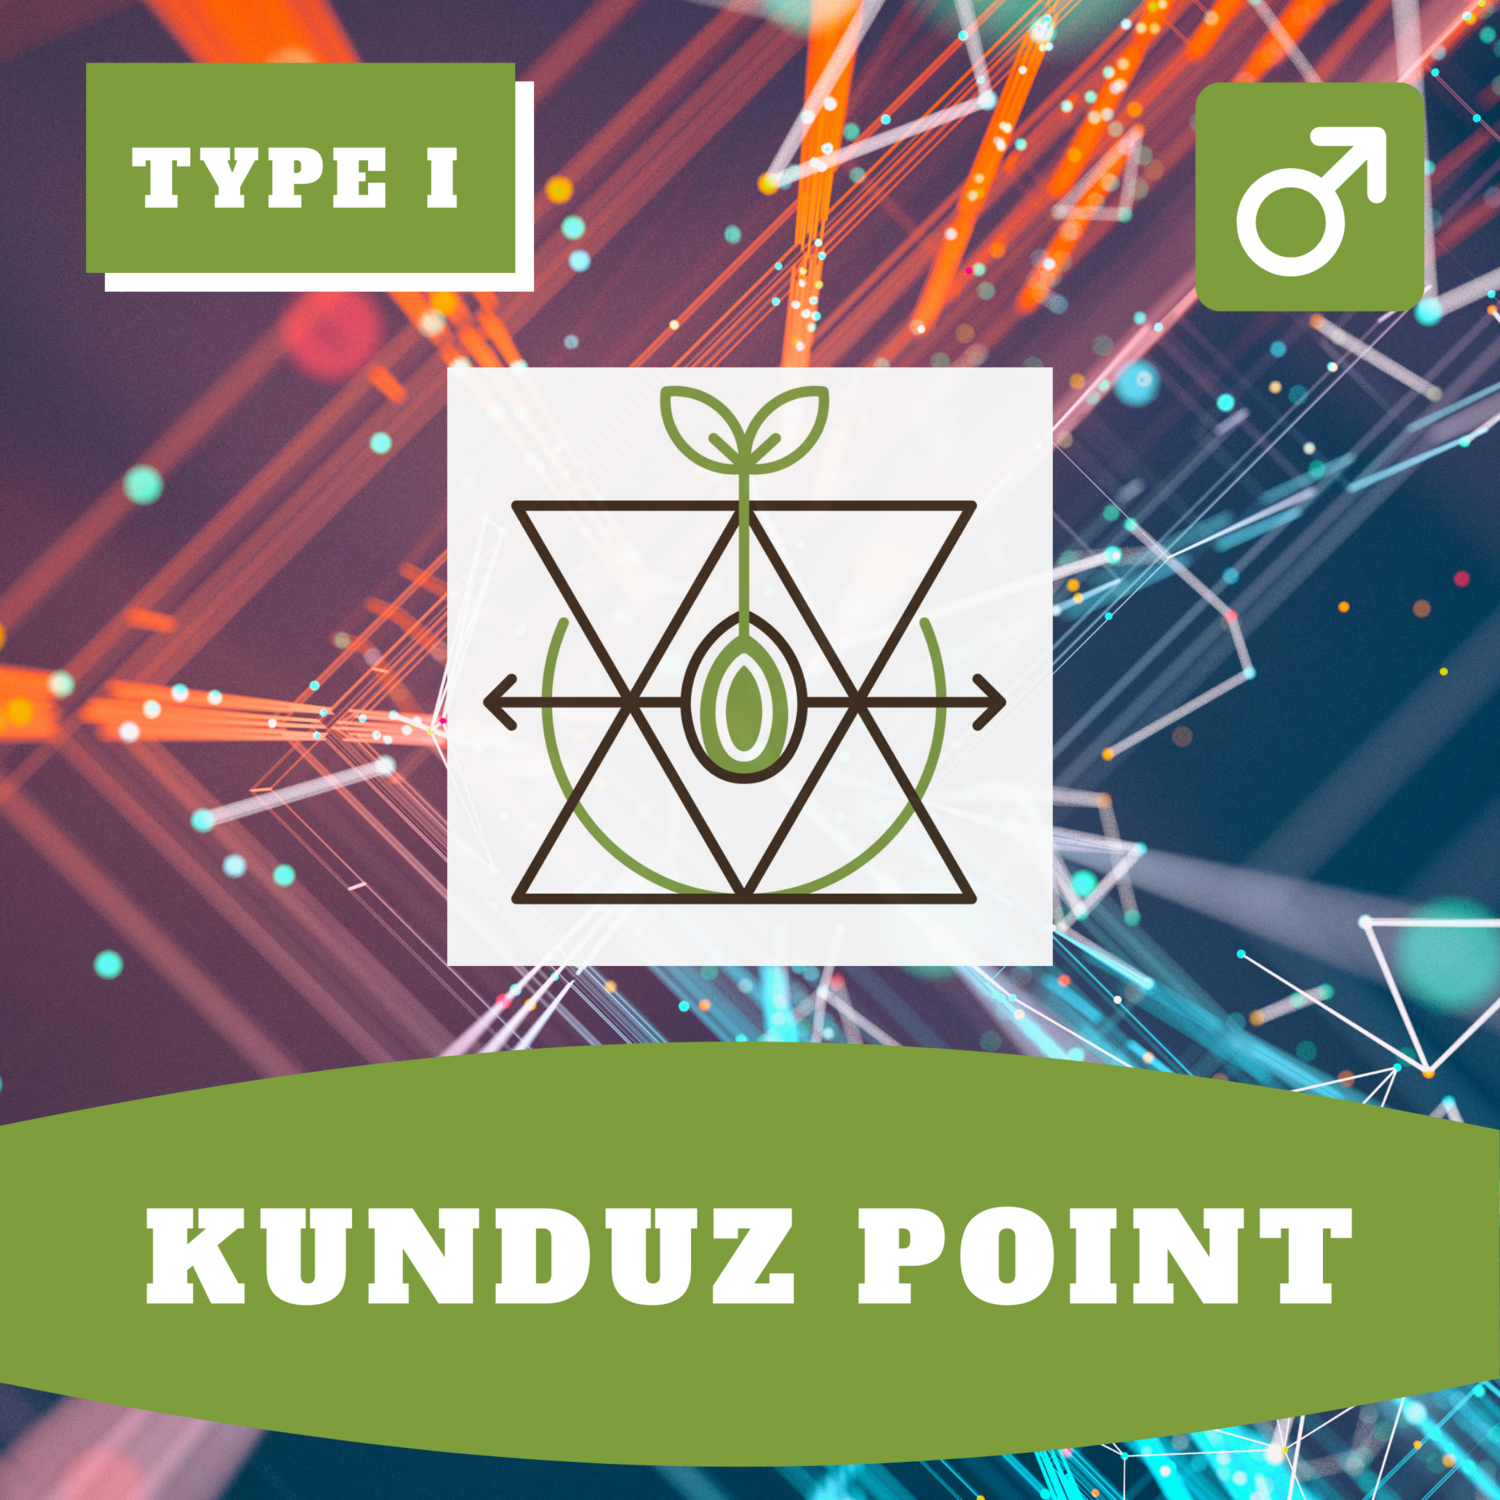 **Kunduz Point - 20 (R) Seeds**